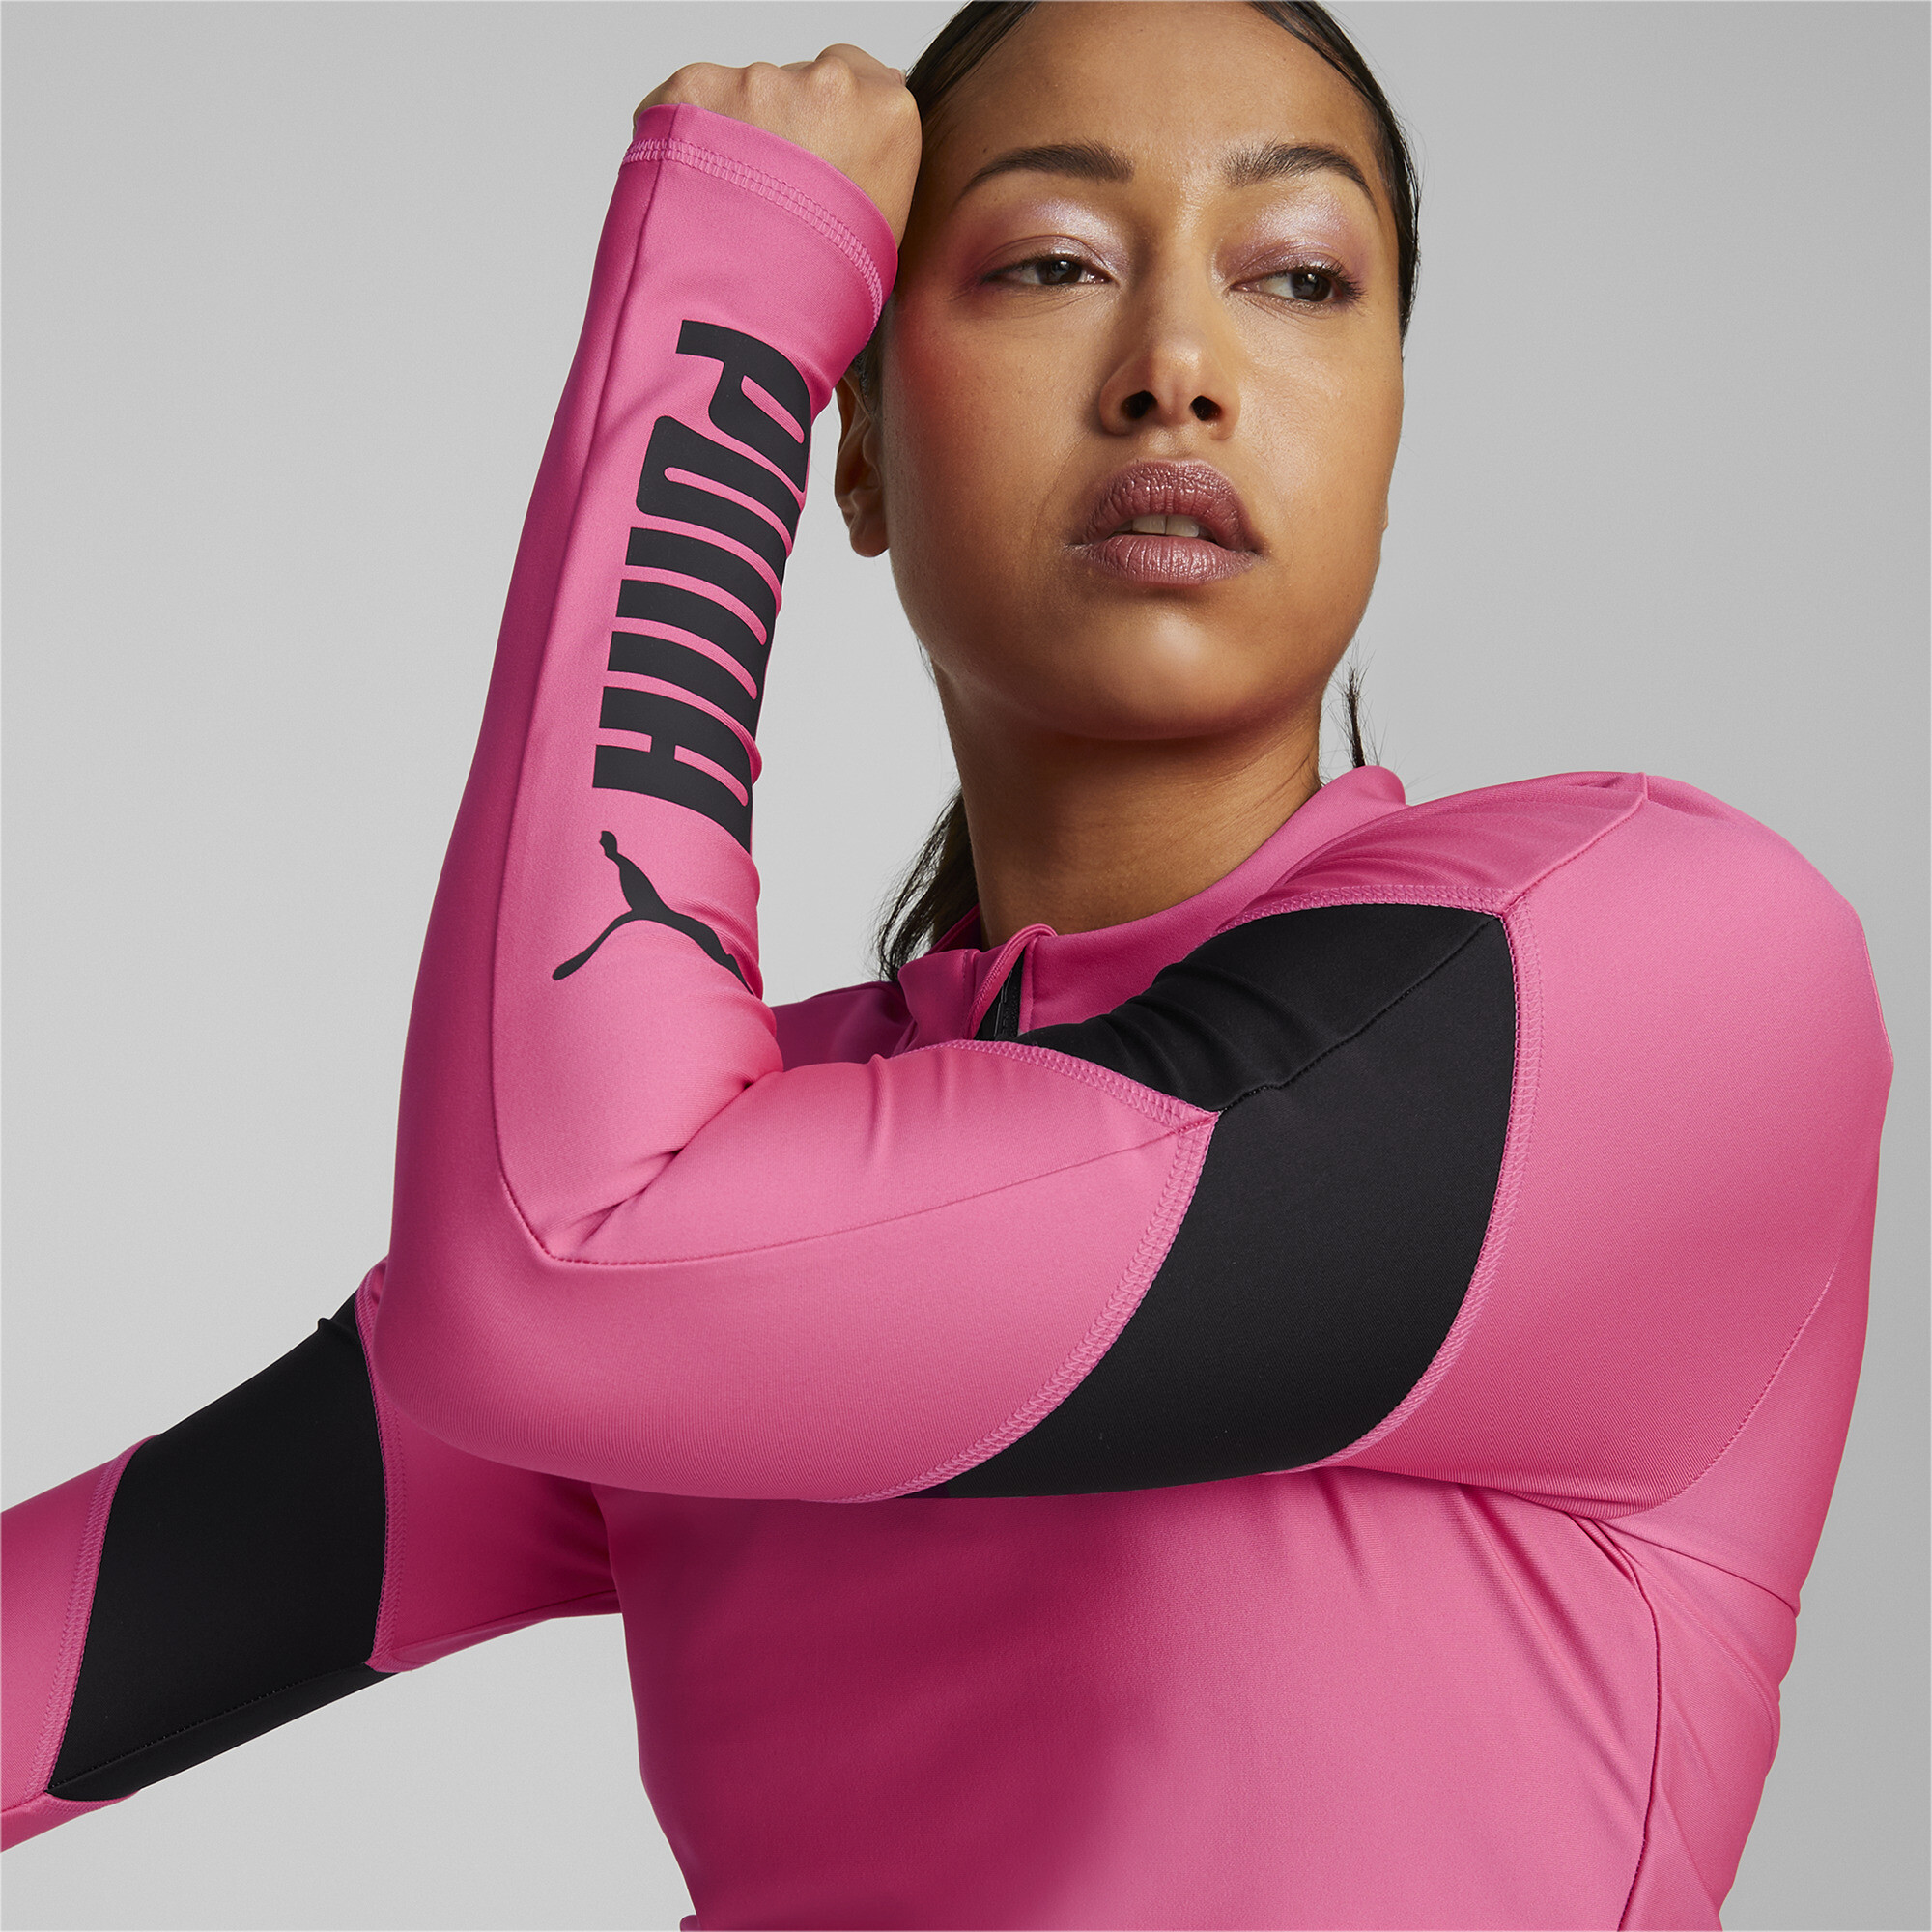 Women's PUMA Fit EVERSCULPT Quarter-Zip Training Crop Top Women In Pink, Size Small